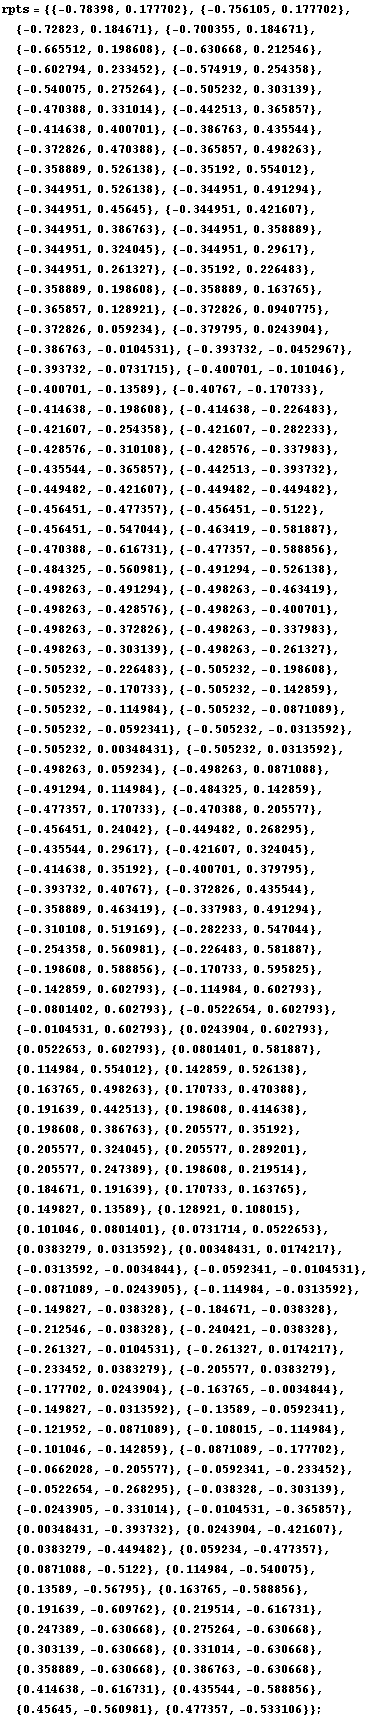 RowBox[{RowBox[{rpts, =, RowBox[{{, RowBox[{RowBox[{{, RowBox[{RowBox[{-, 0.78398}], ,, 0.1777 ... , 0.560981}]}], }}], ,, RowBox[{{, RowBox[{0.477357, ,, RowBox[{-, 0.533106}]}], }}]}], }}]}], ;}]